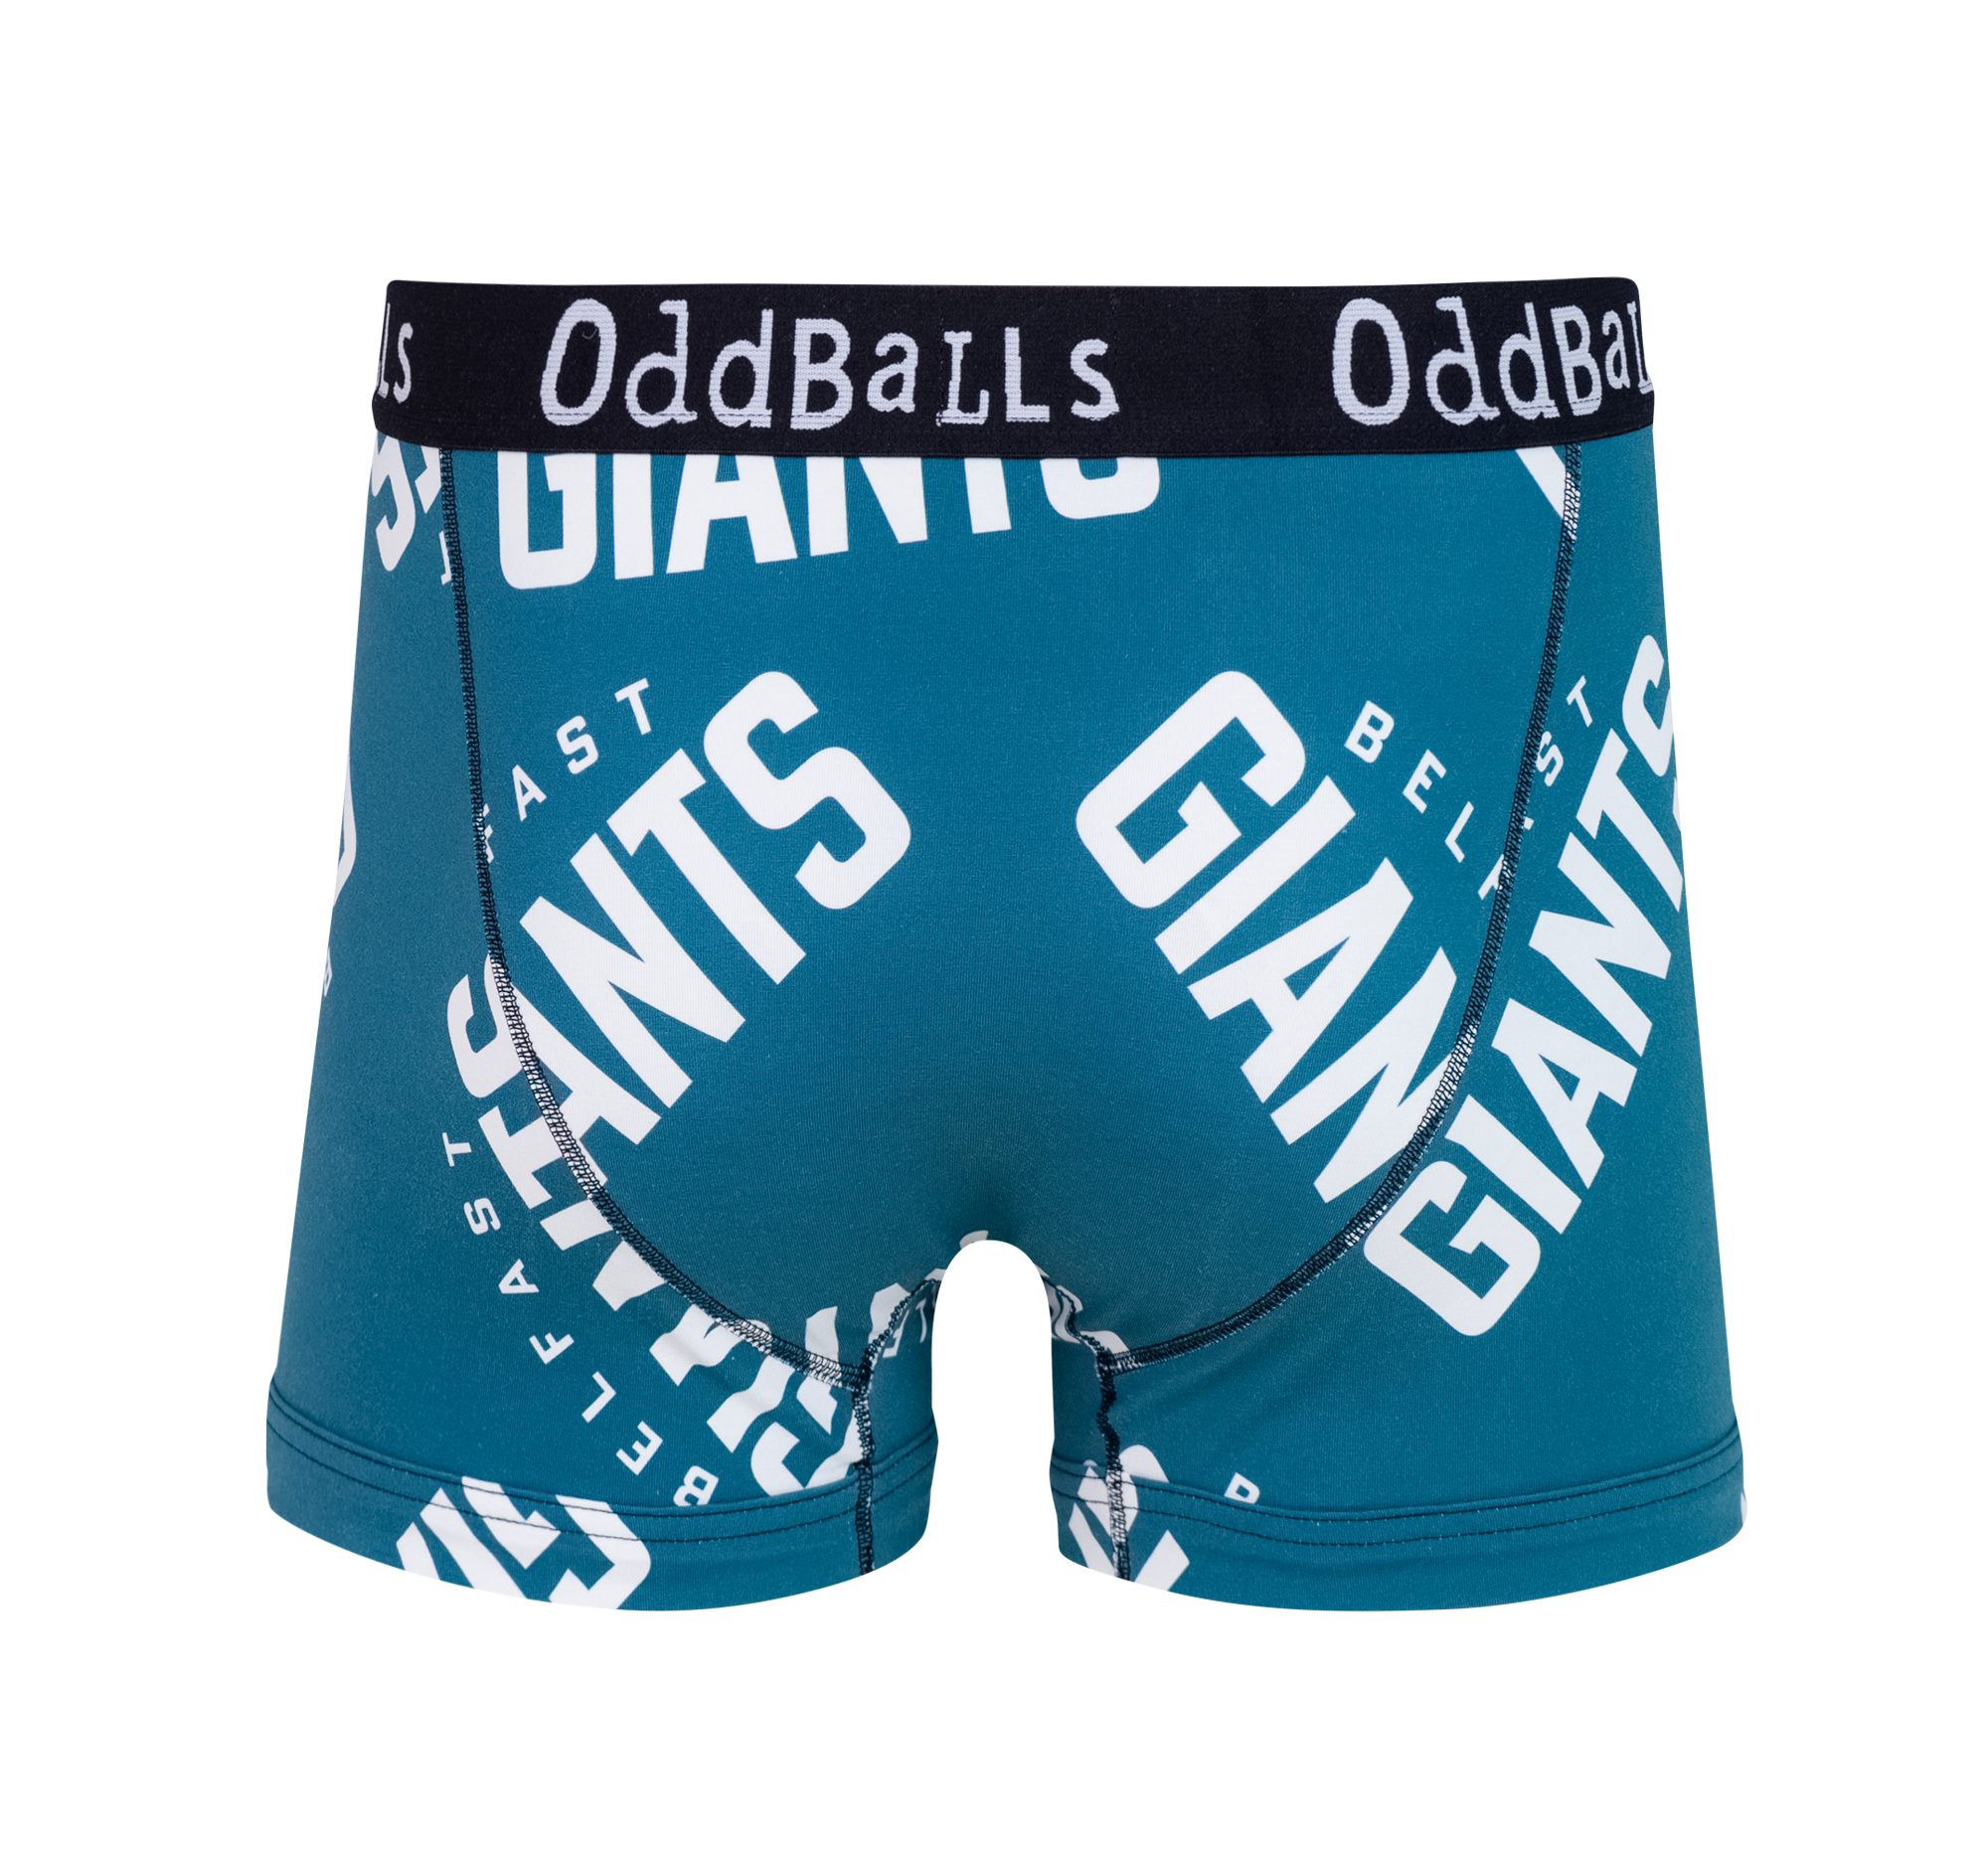 Copy of OddBalls Mens Boxer Shorts